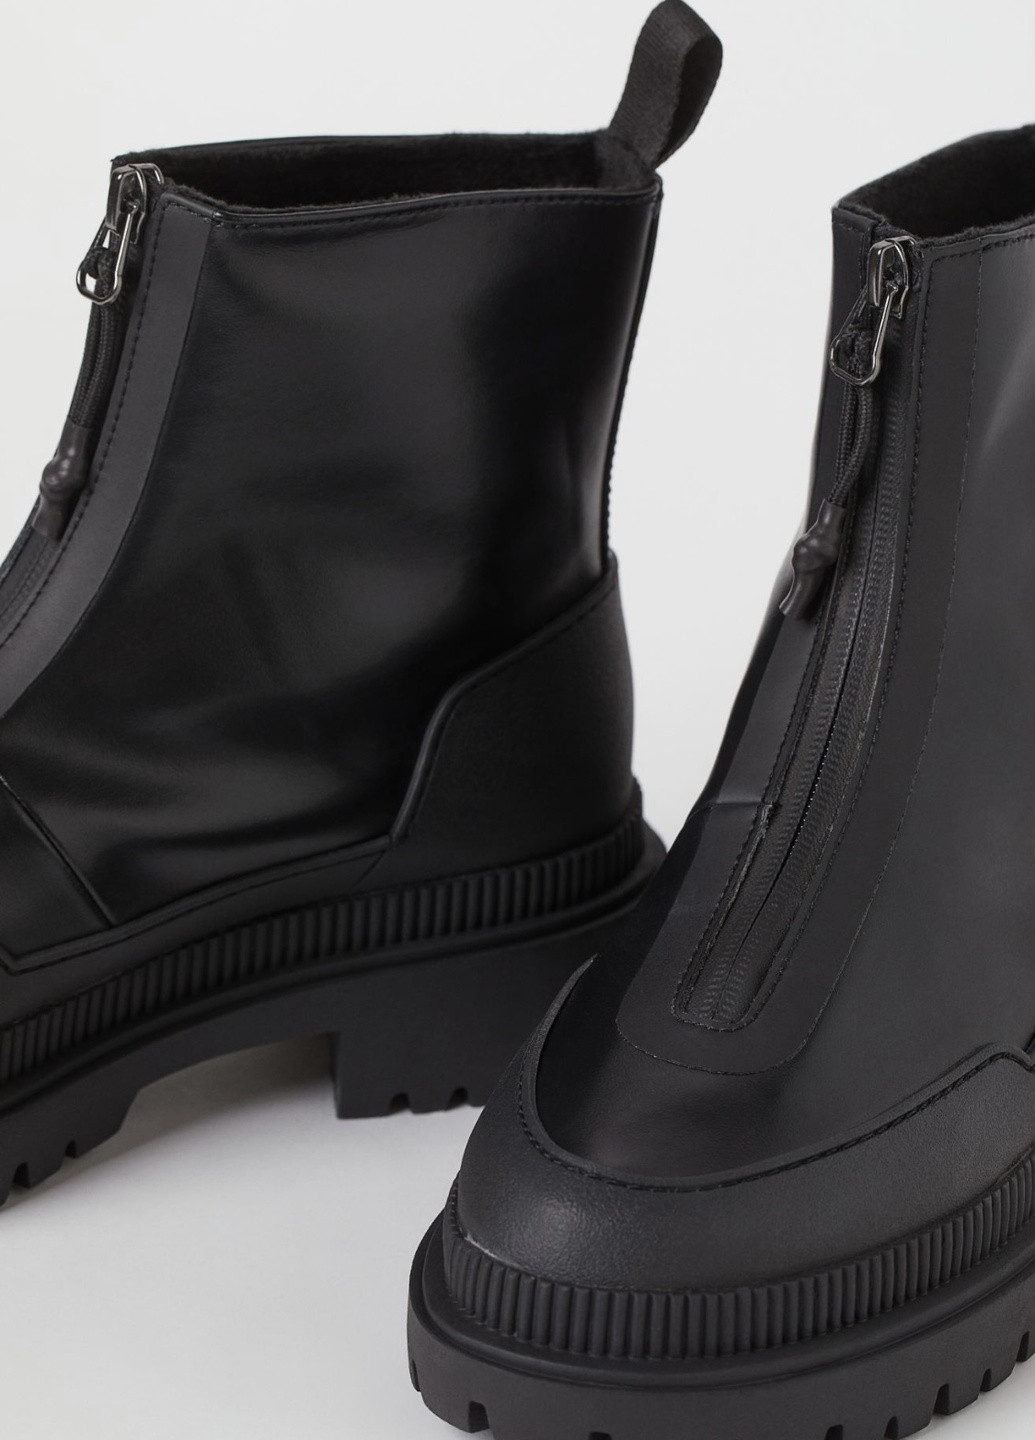 Осенние водоотталкивающие и водонепроницаемые ботинки н&м H&M с молнией из искусственной кожи